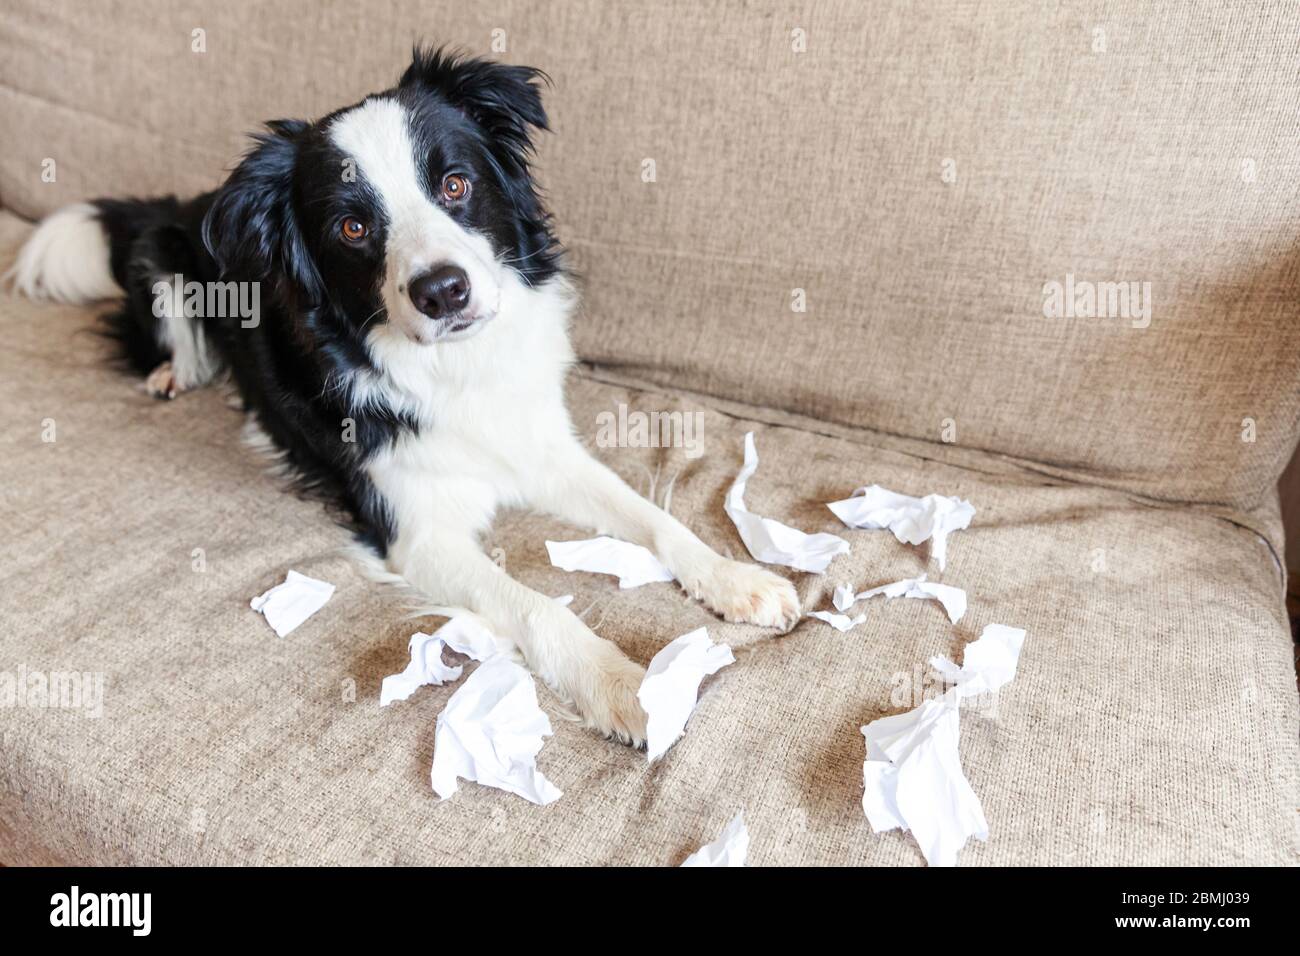 Naughty chien joueur bordure de chien de chiot collie après avoir mal piquant papier toilette couché sur le canapé à la maison. Coupable et détruit la salle de séjour. Abîissez votre chiot et votre maison avec un regard amusant Banque D'Images